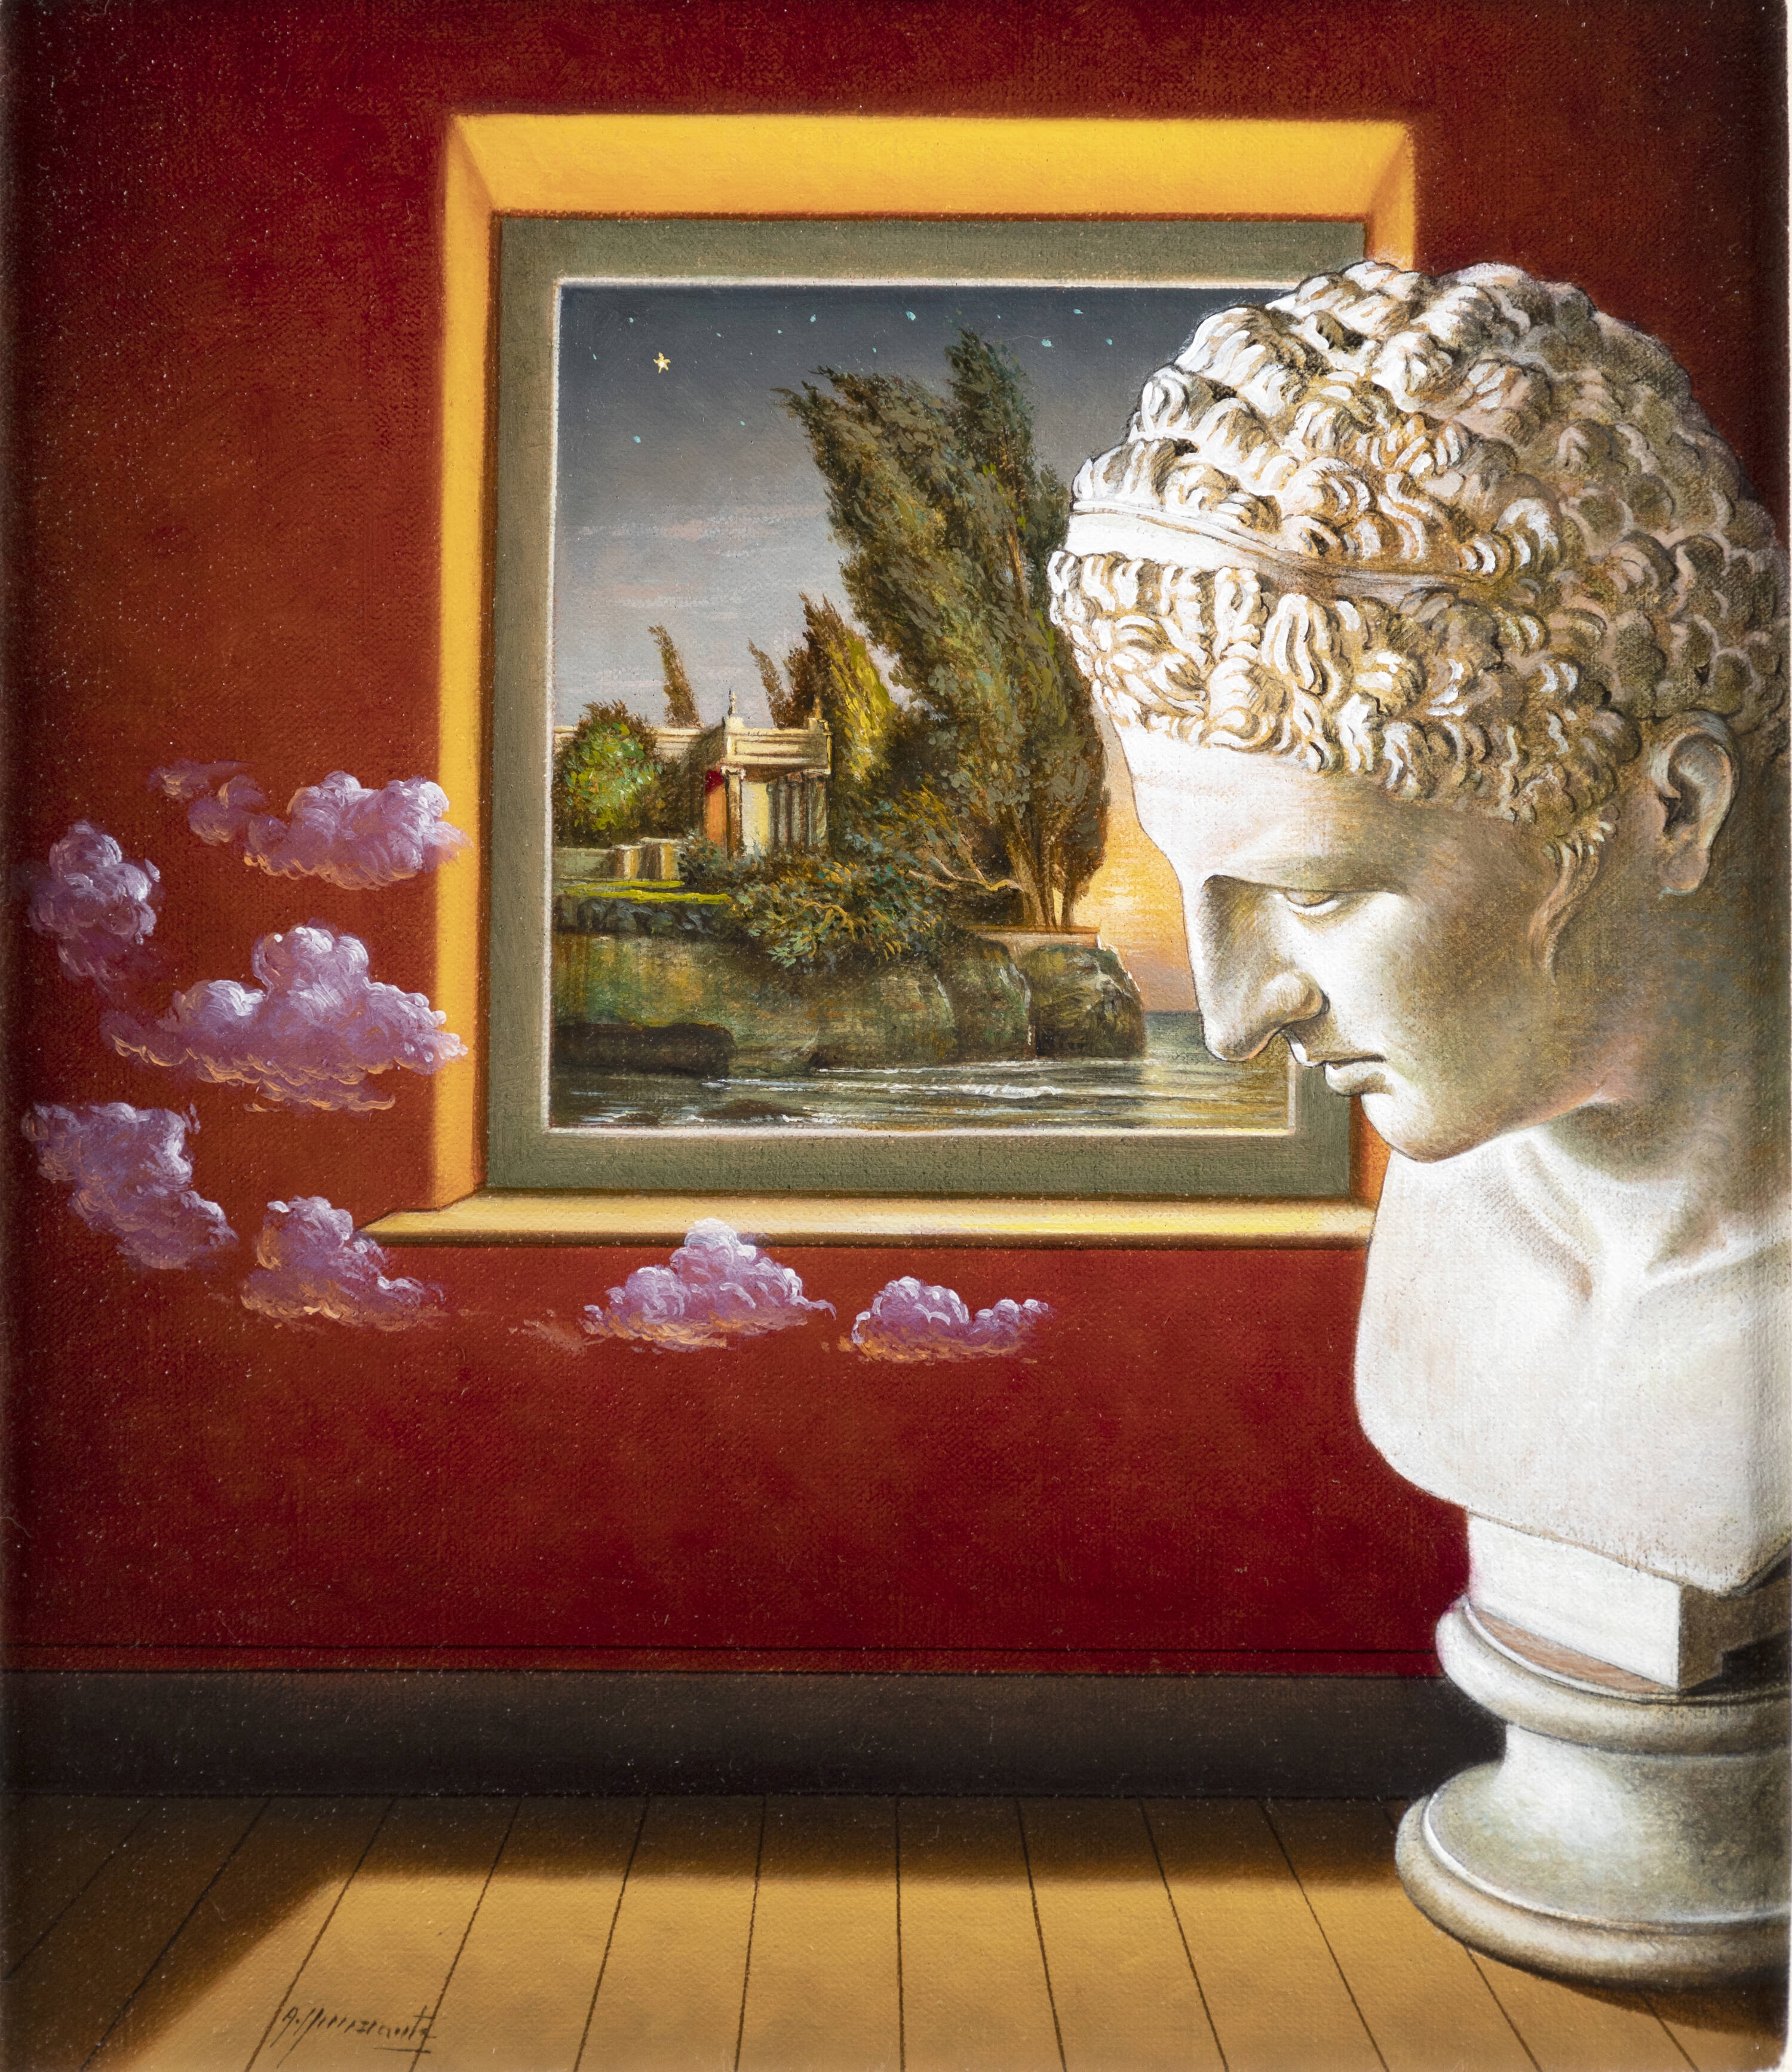 Artwork by Antonio Nunziante, I sogni come le nuvole, Made of oil on canvas